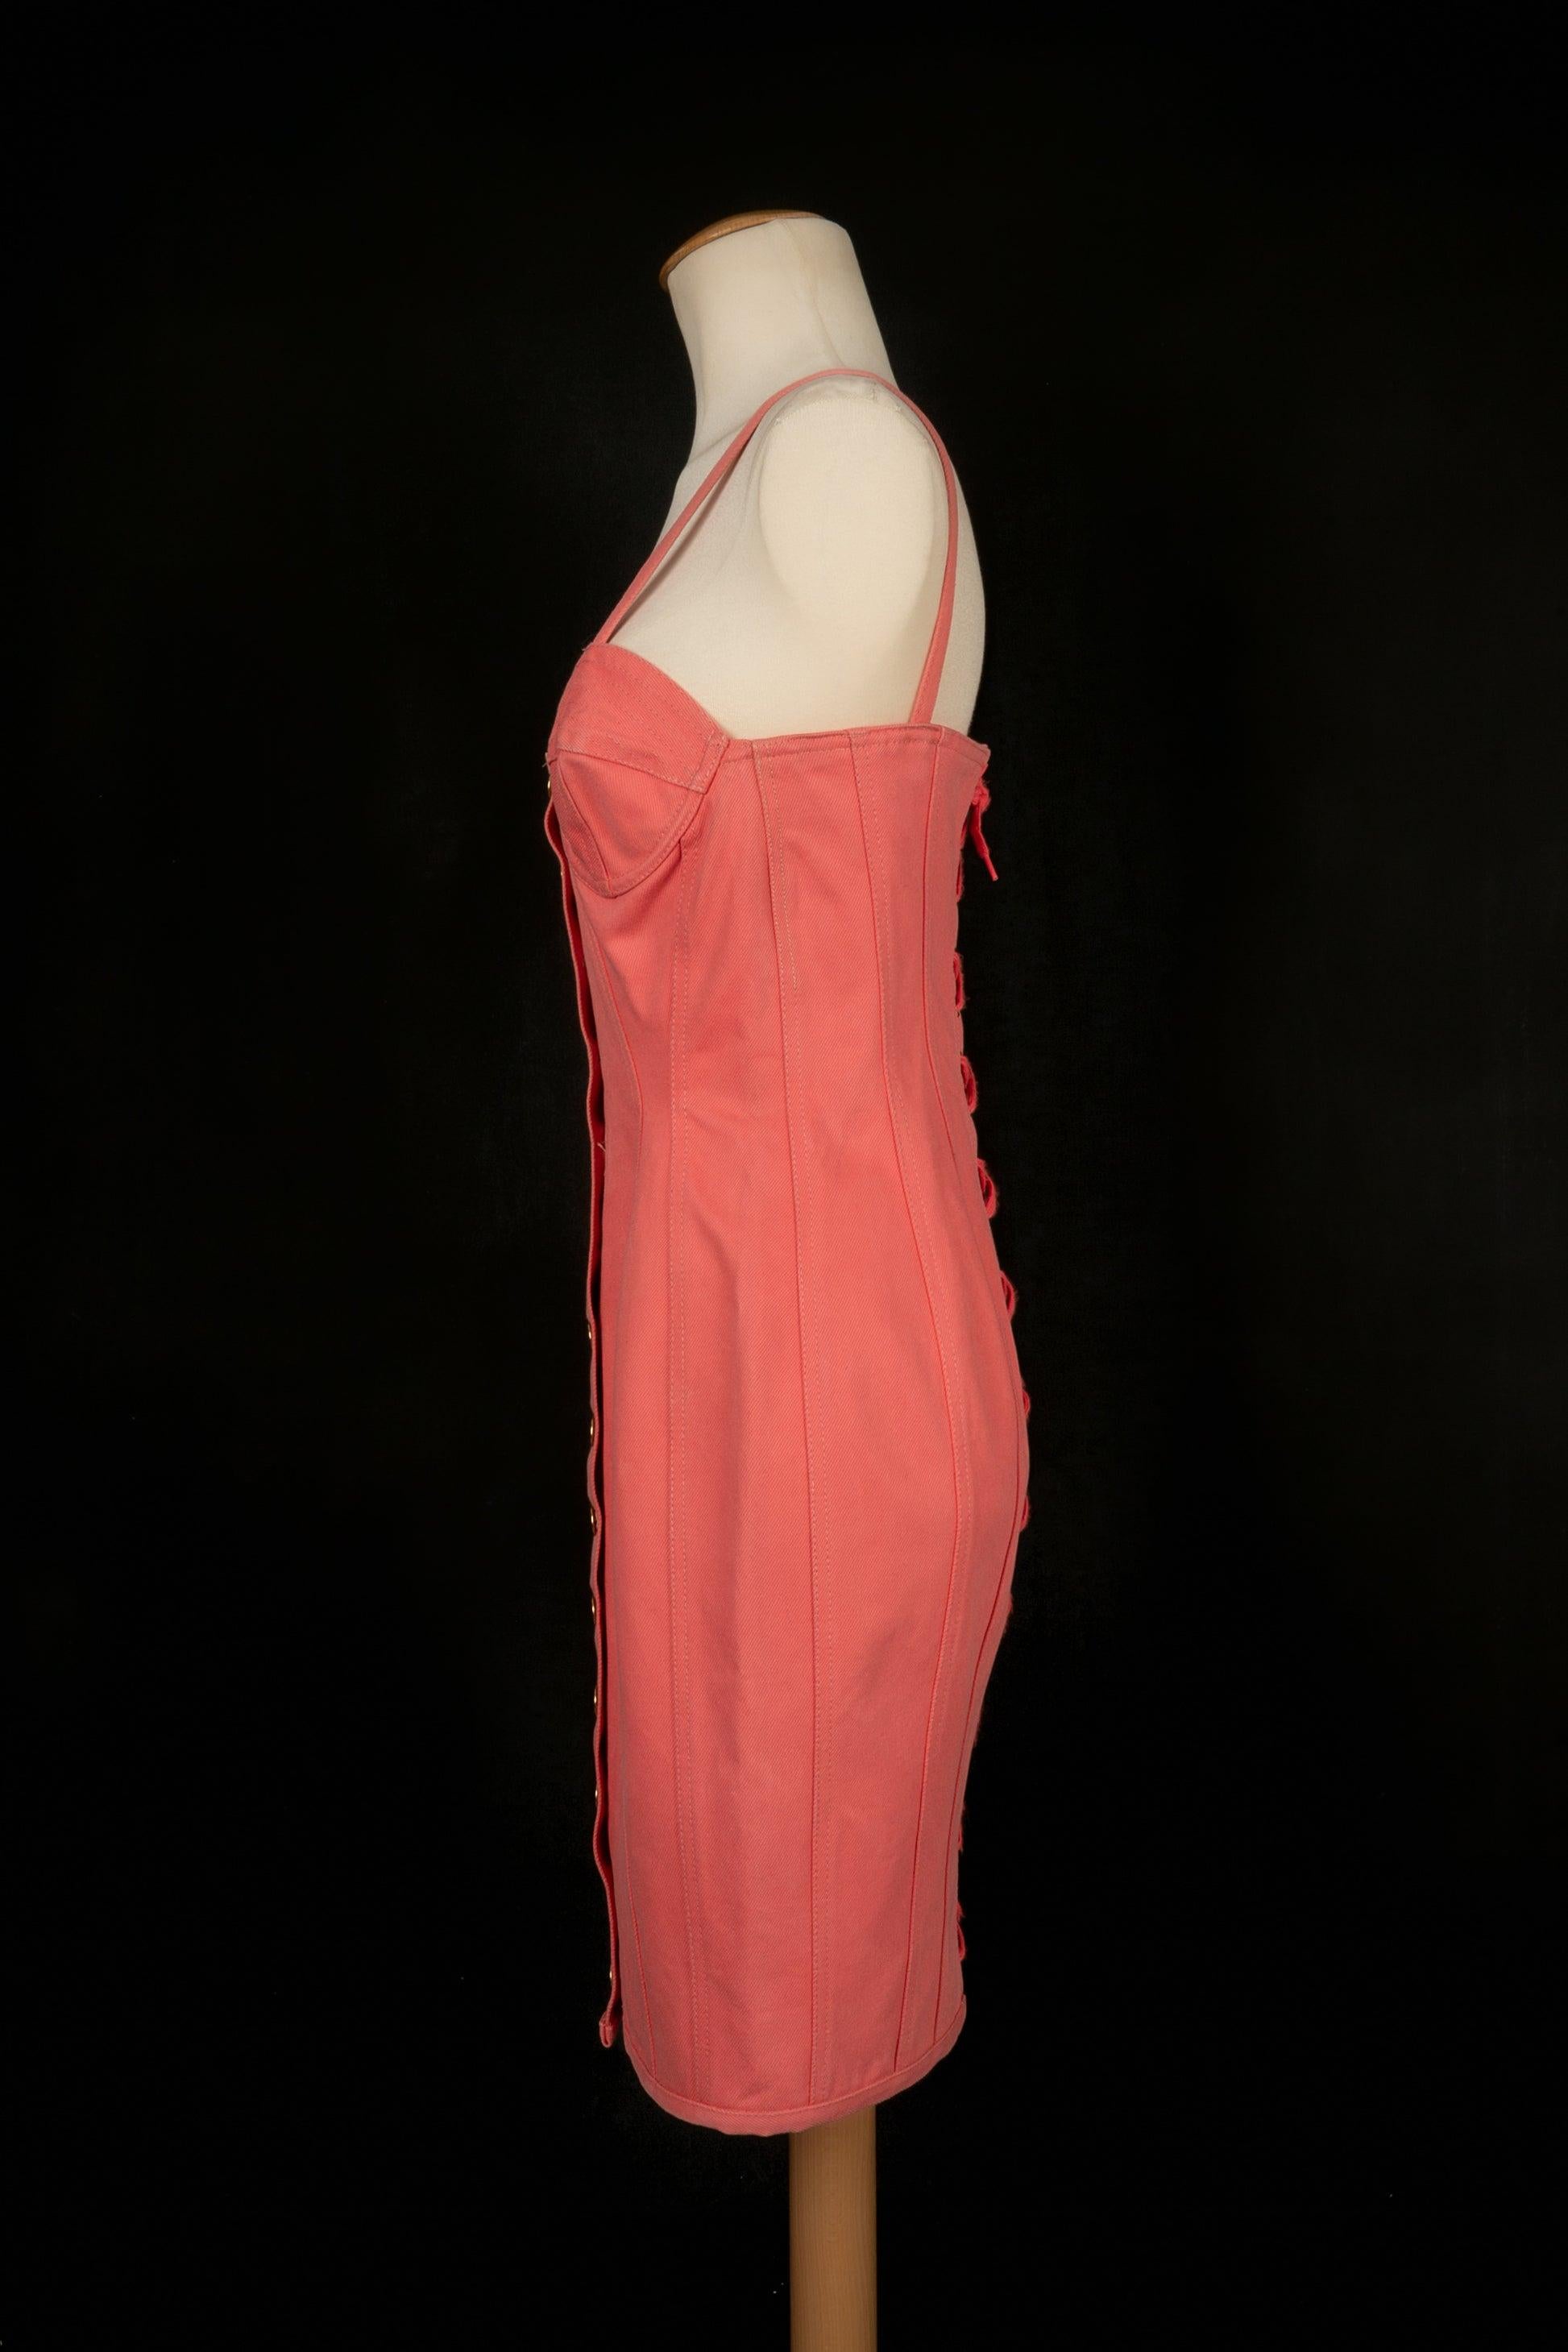 Jean-Paul Gaultier - (Made in Italy) Rosa Baumwollkleid mit goldenen Metallknöpfen. 42IT Größe angegeben, es passt eine 38FR.

Zusätzliche Informationen:
Zustand: Sehr guter Zustand
Abmessungen: Brustumfang: 40 cm - Taillenumfang: 31 cm -